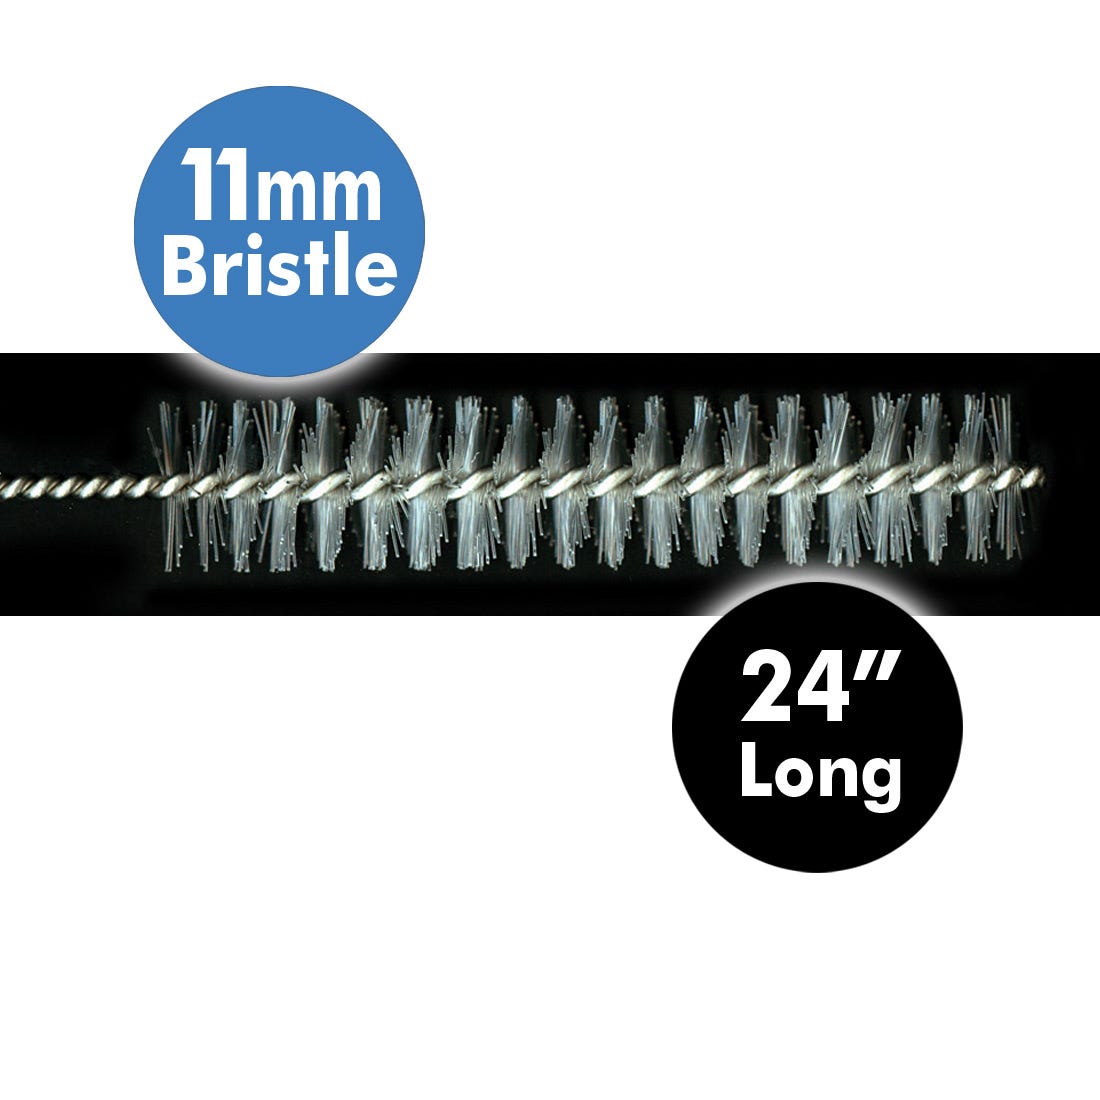 ACE Autoclavable Cleaning Brushes, large, 11mm bristle diameter, 24" long -12/Pkg